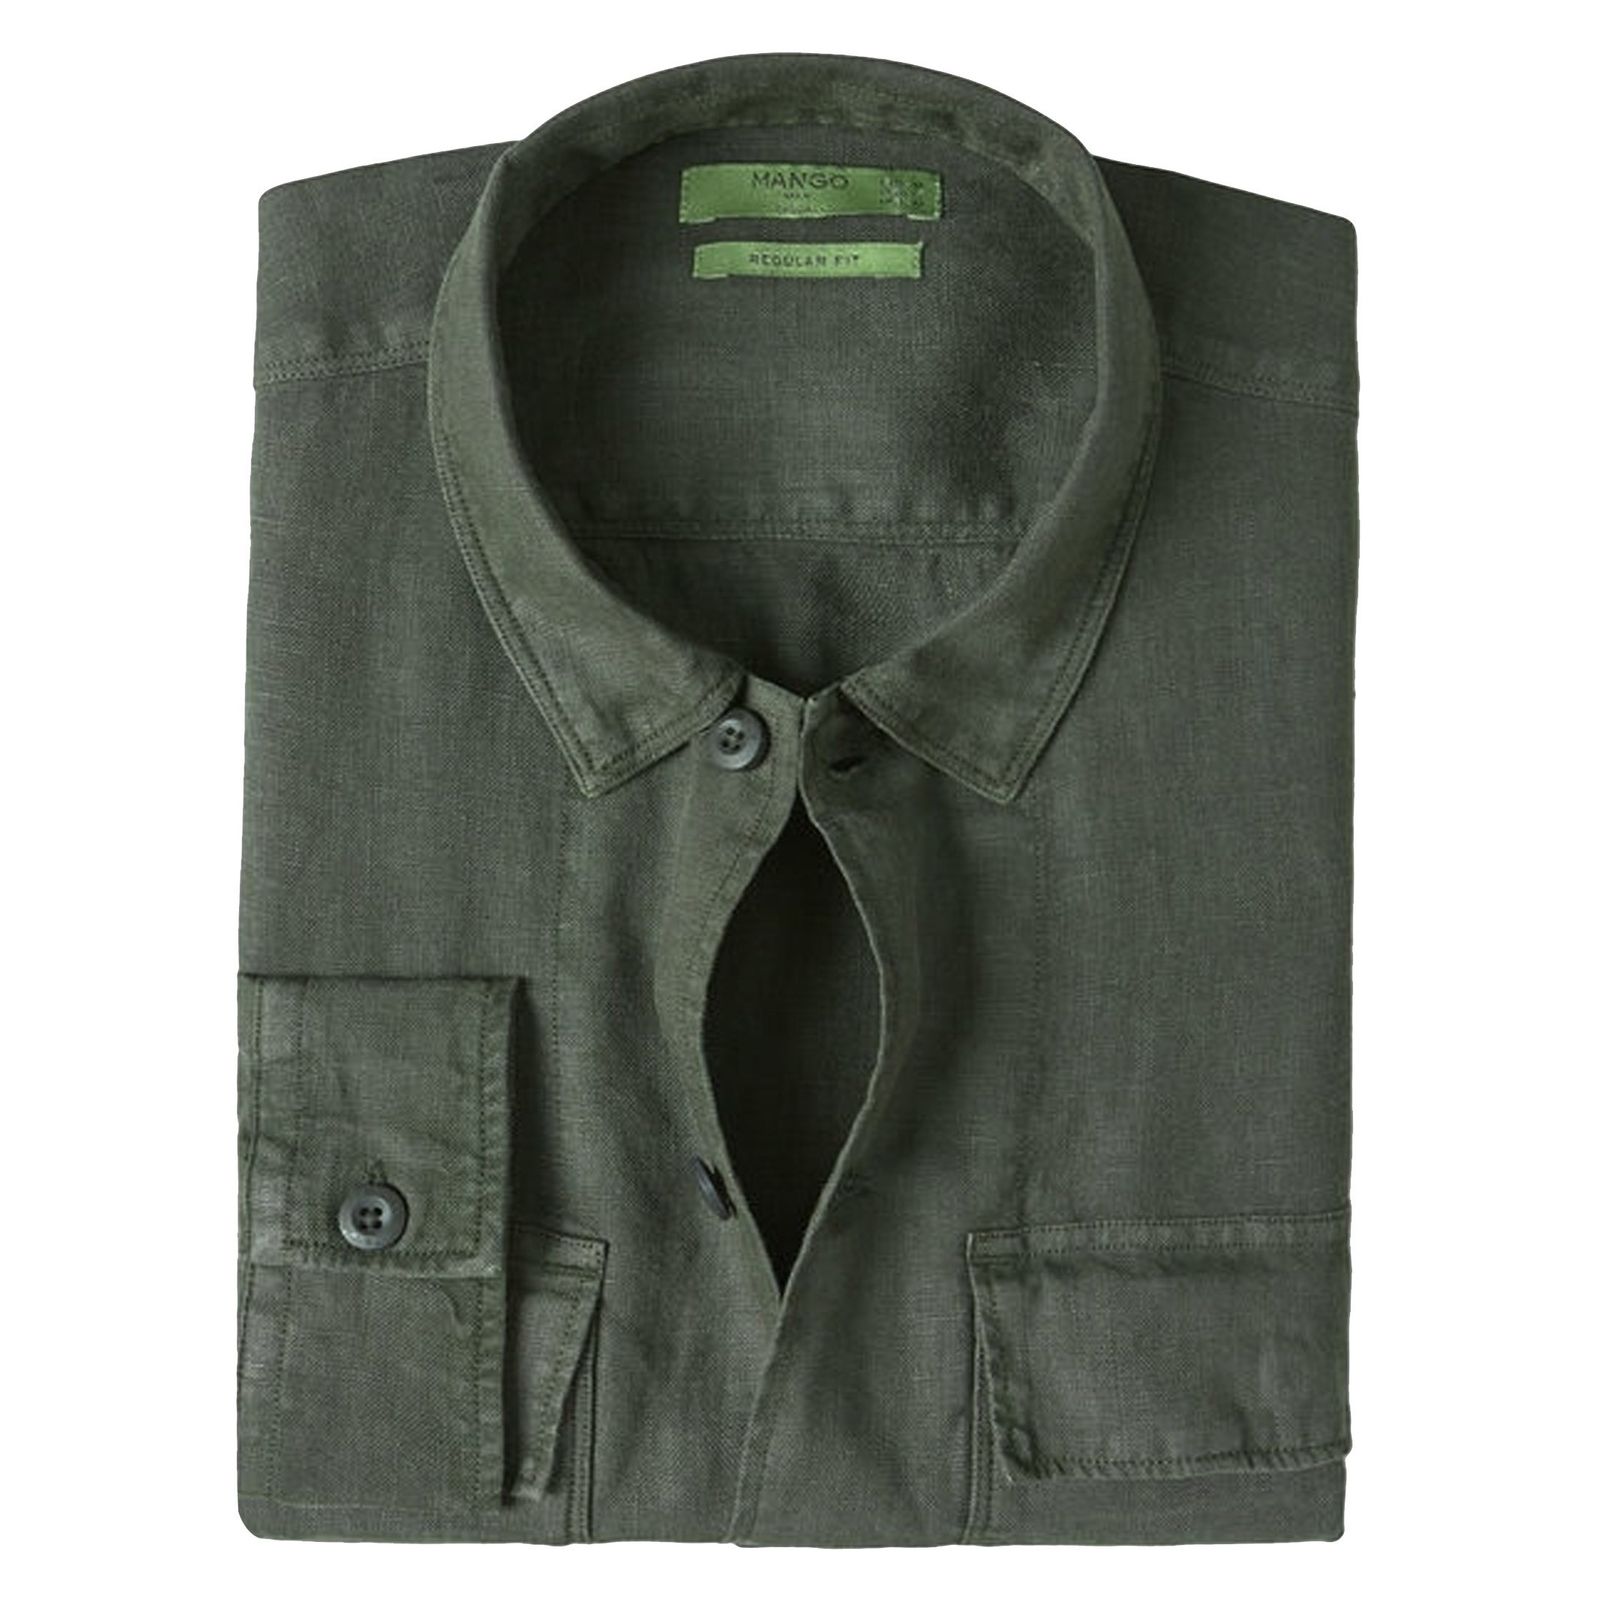 پیراهن آستین بلند مردانه - مانگو - سبز - 2